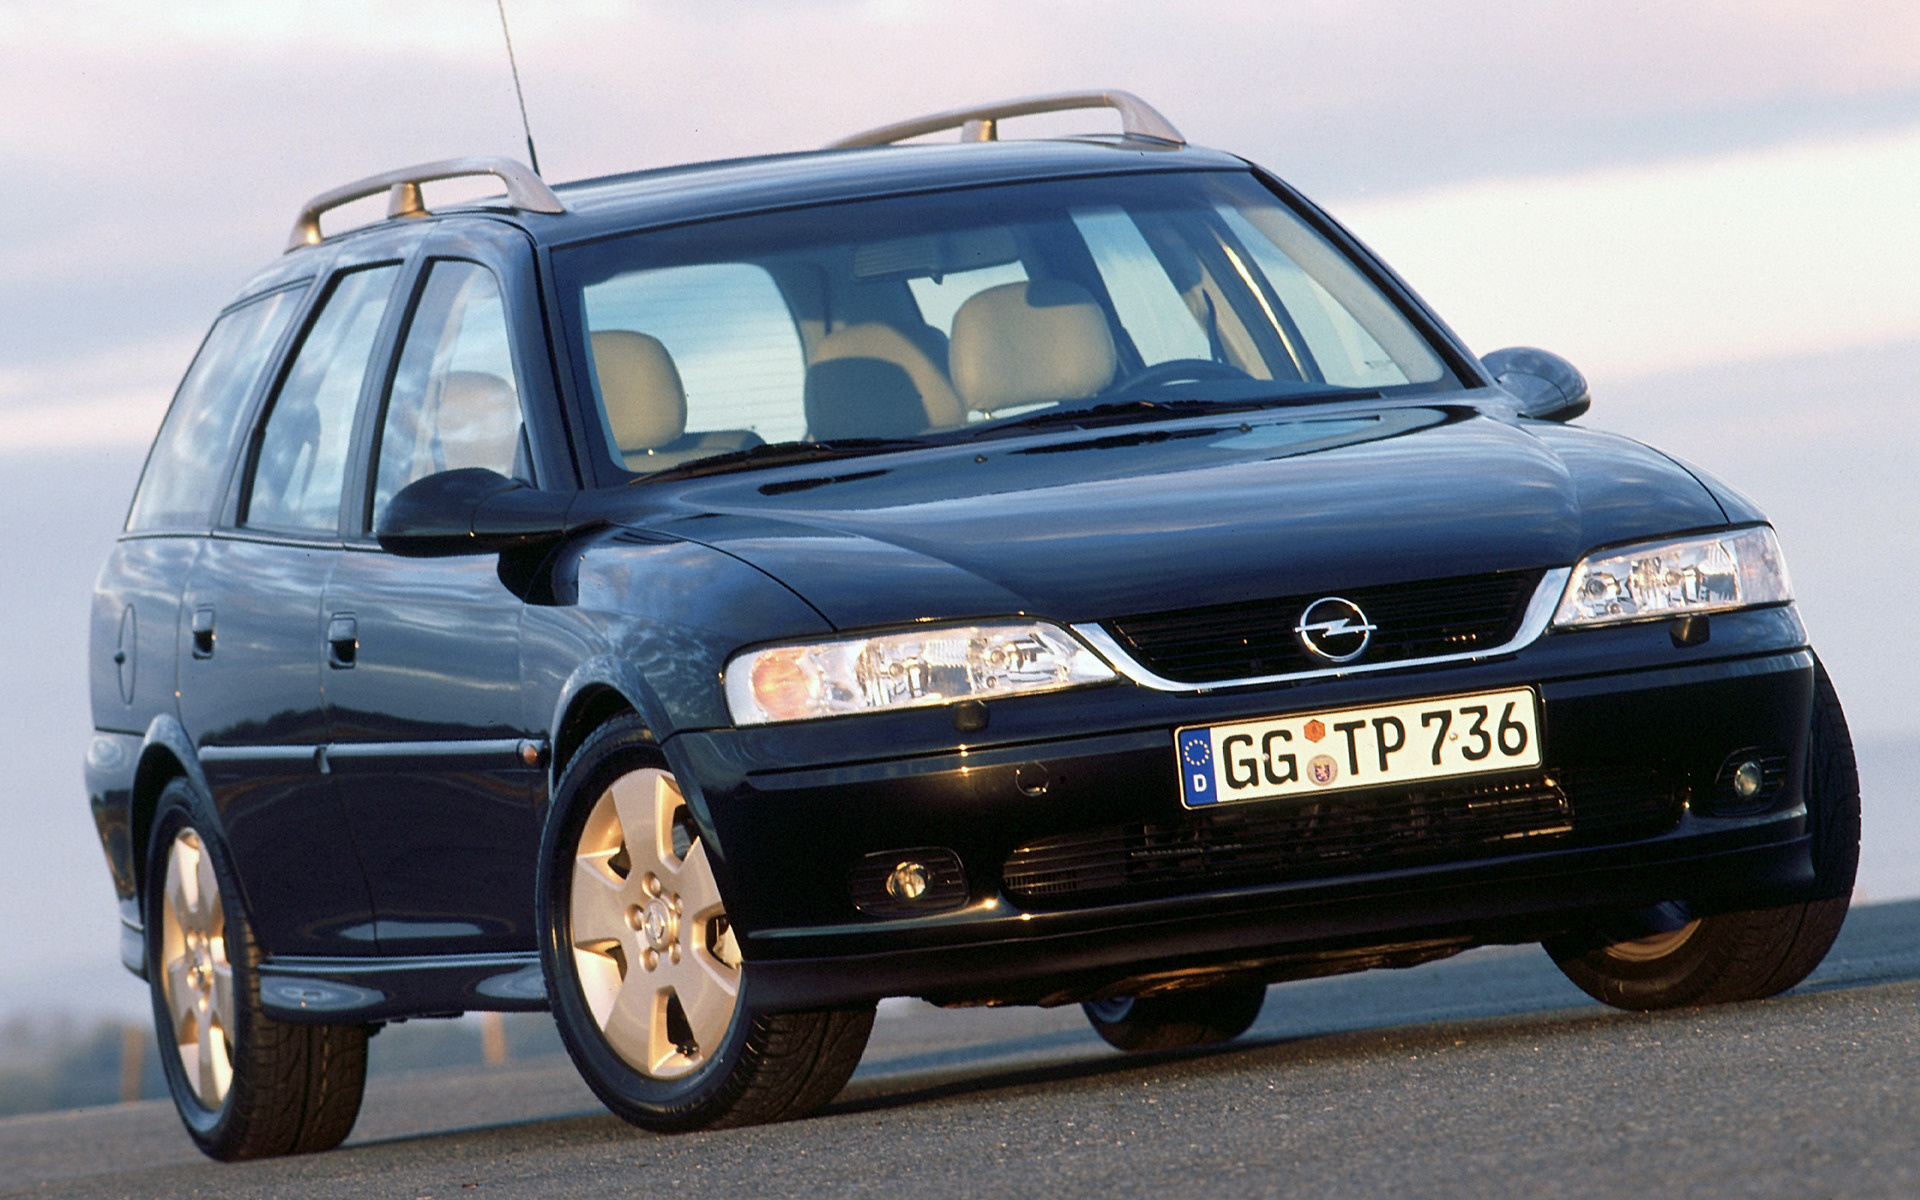 Вектра караван. Opel Vectra 2000 универсал. Opel Vectra Caravan 2000. Опель Вектра 1999 универсал. Opel Vectra b 2000 Universal.